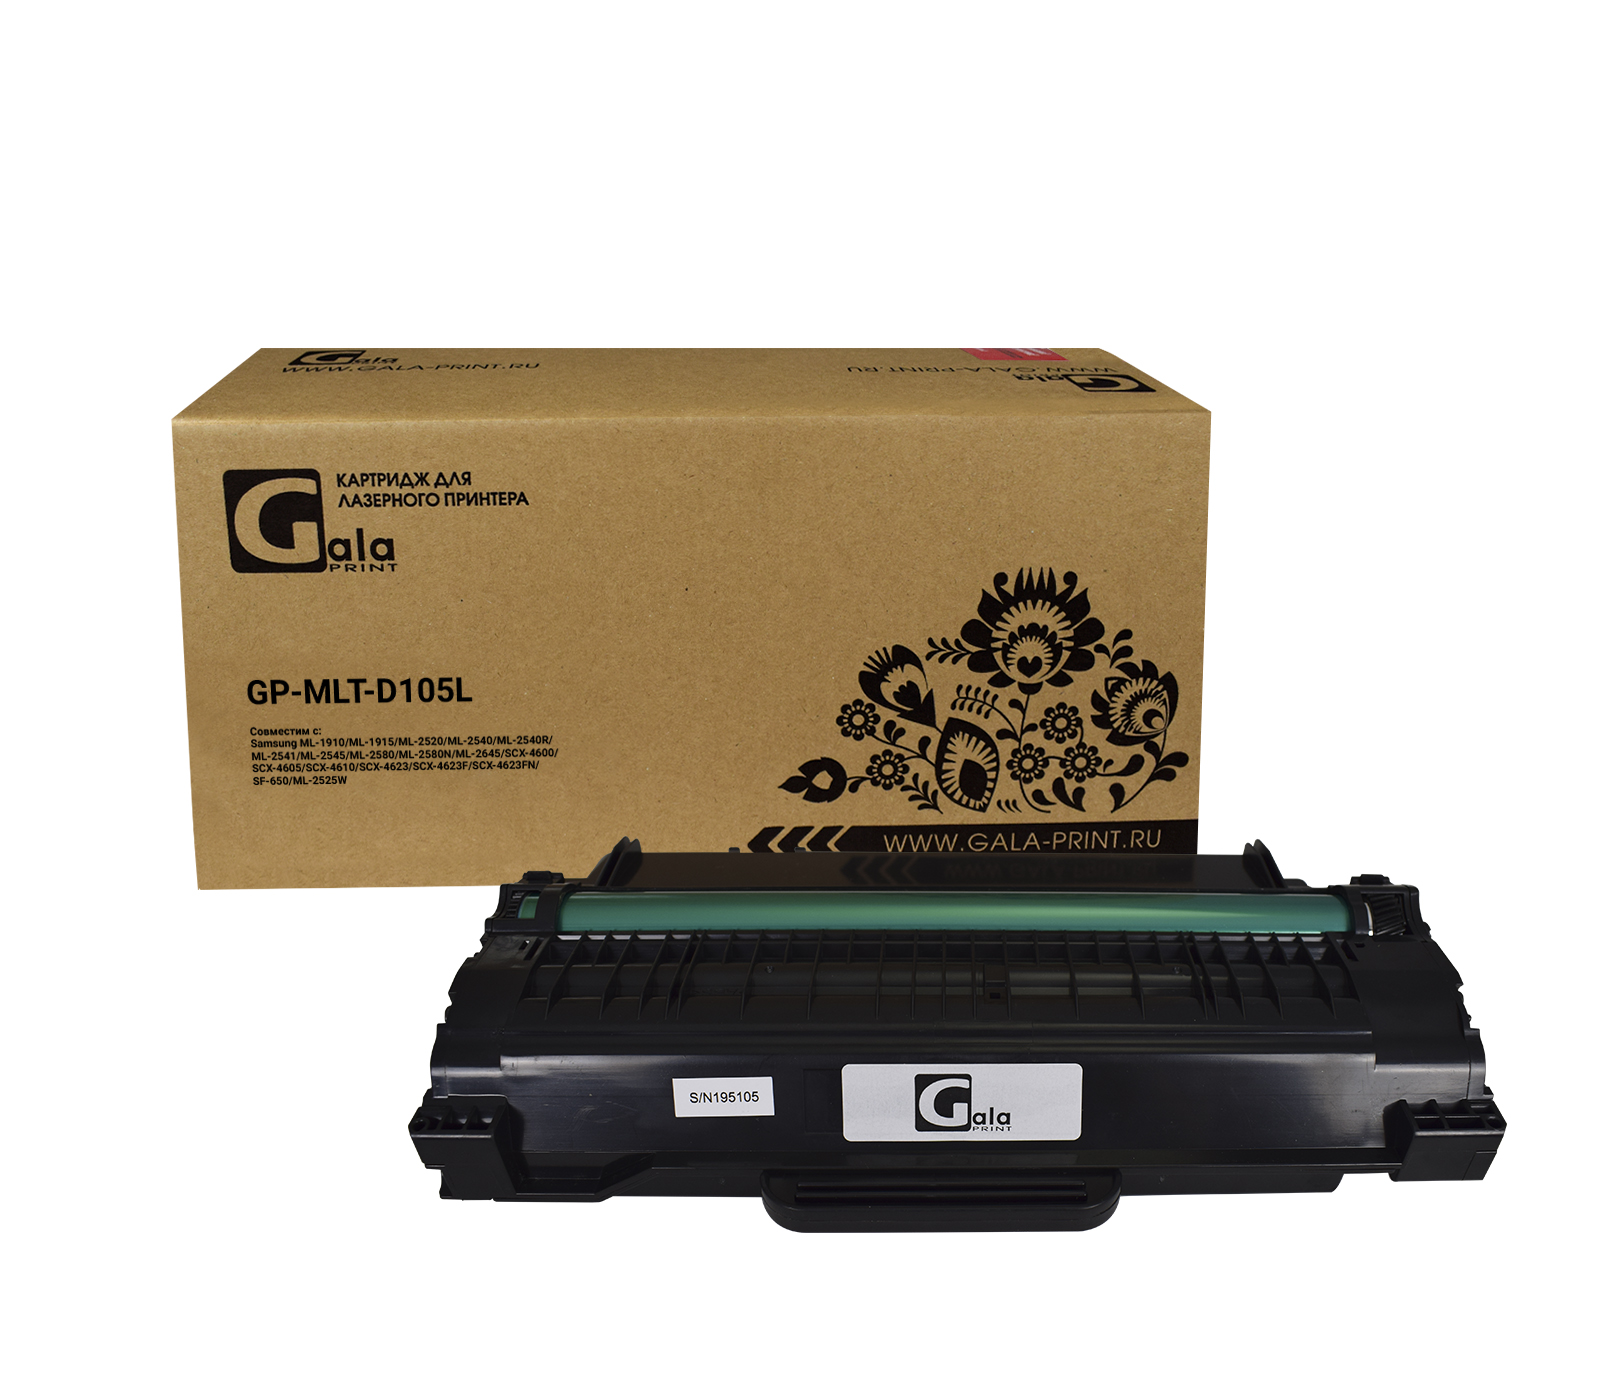 Картридж GP-MLT-D105L для принтеров Samsung ML-1910/1915/2525/2525W/2580N SCX-4600/4623F/4623GN SF650 2500 копий GalaPrint